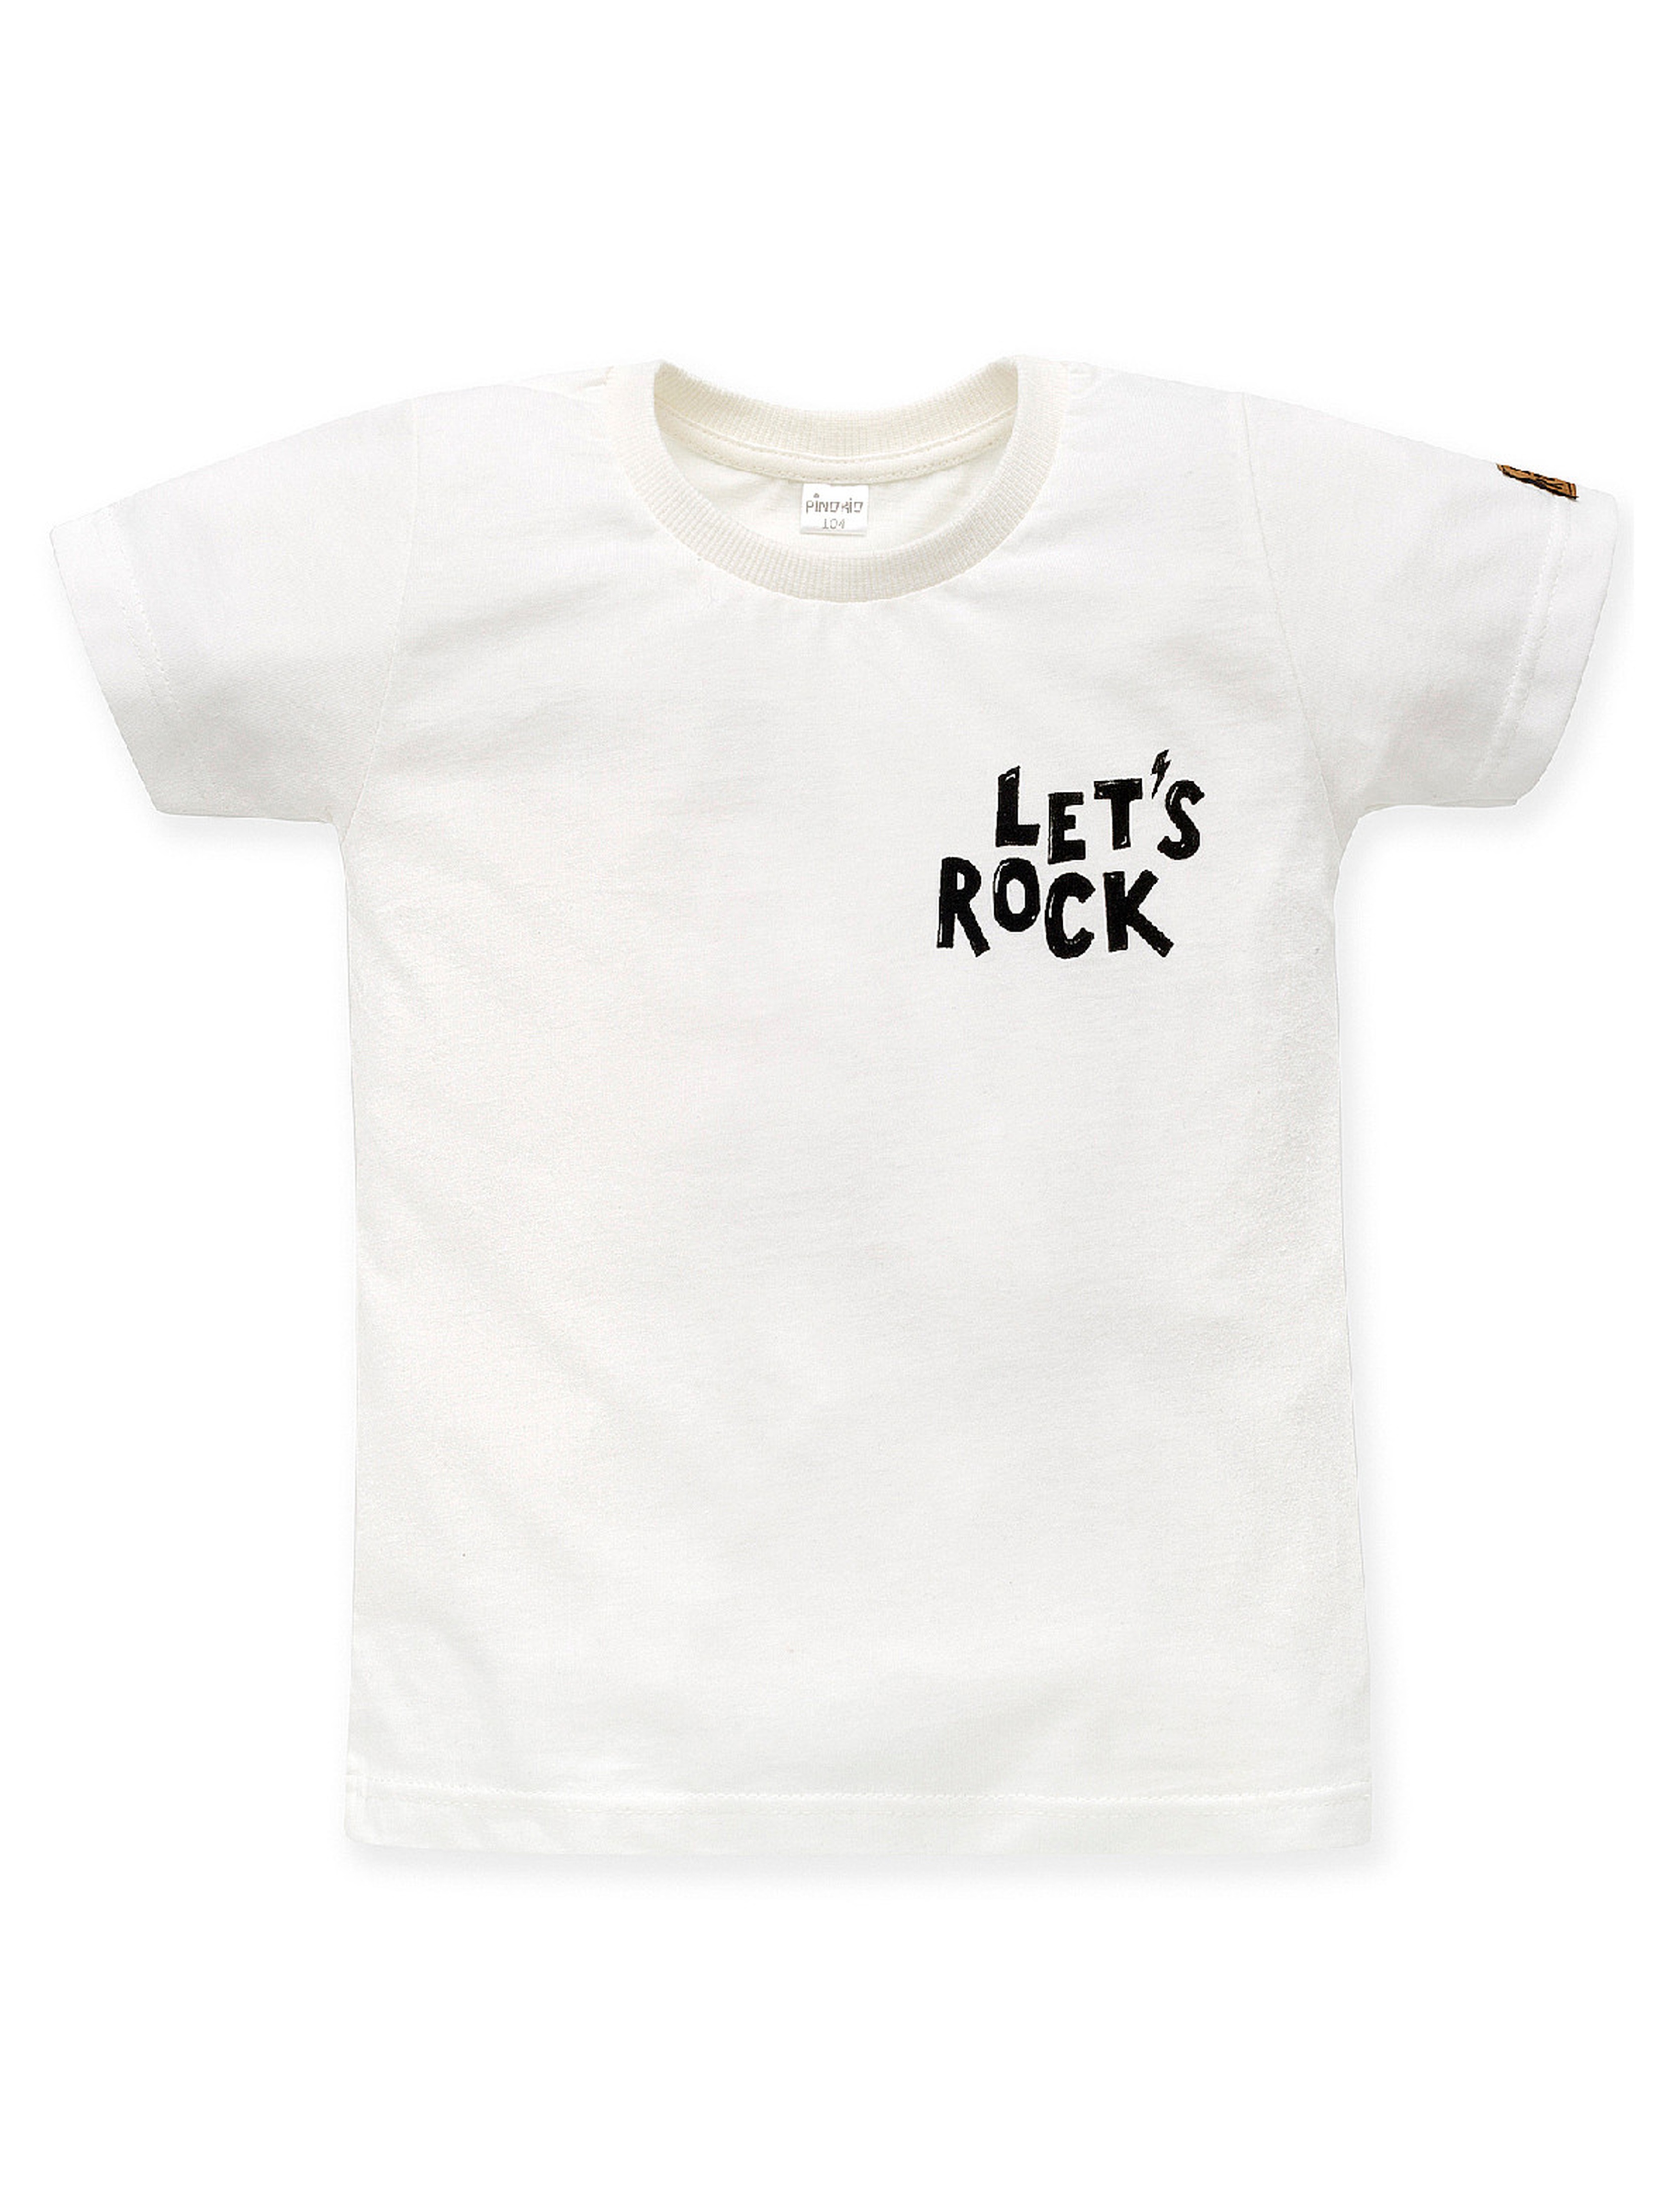 Dzianinowy t-shirt niemowlęcy Let's rock ecru